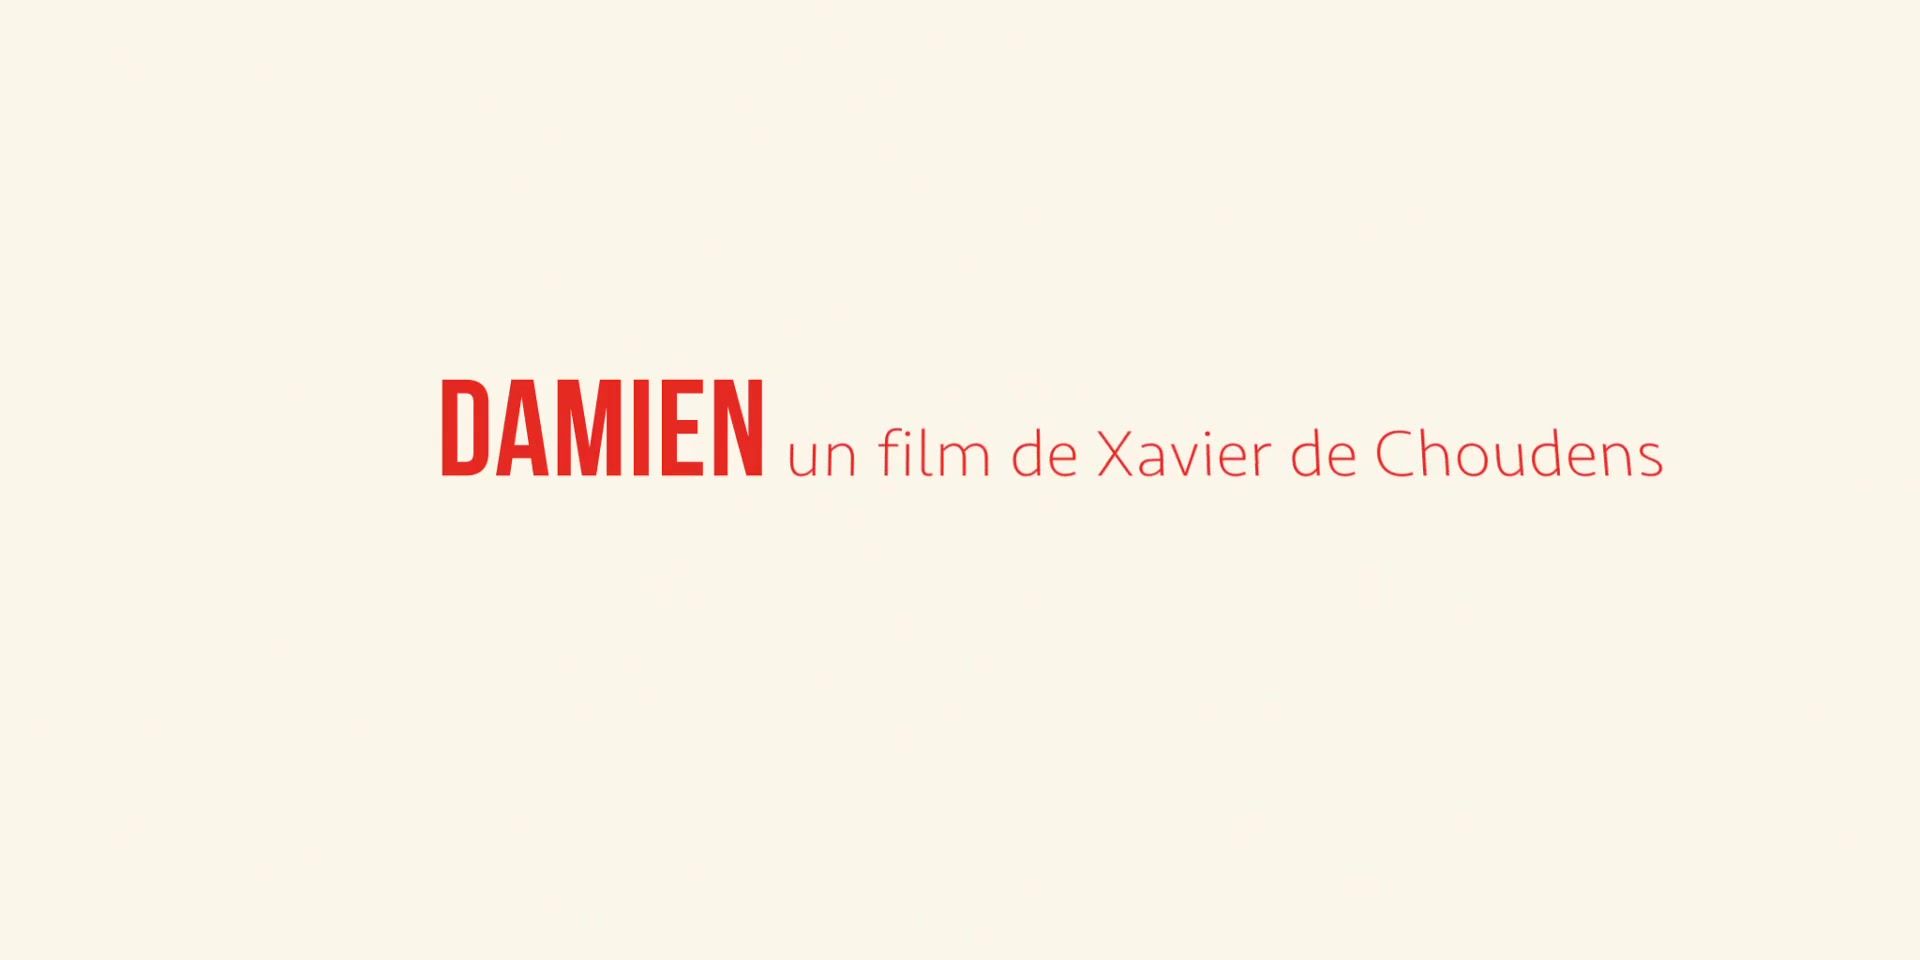 Danish Claire Chust nude - Damien veut changer le monde (2019) Tia